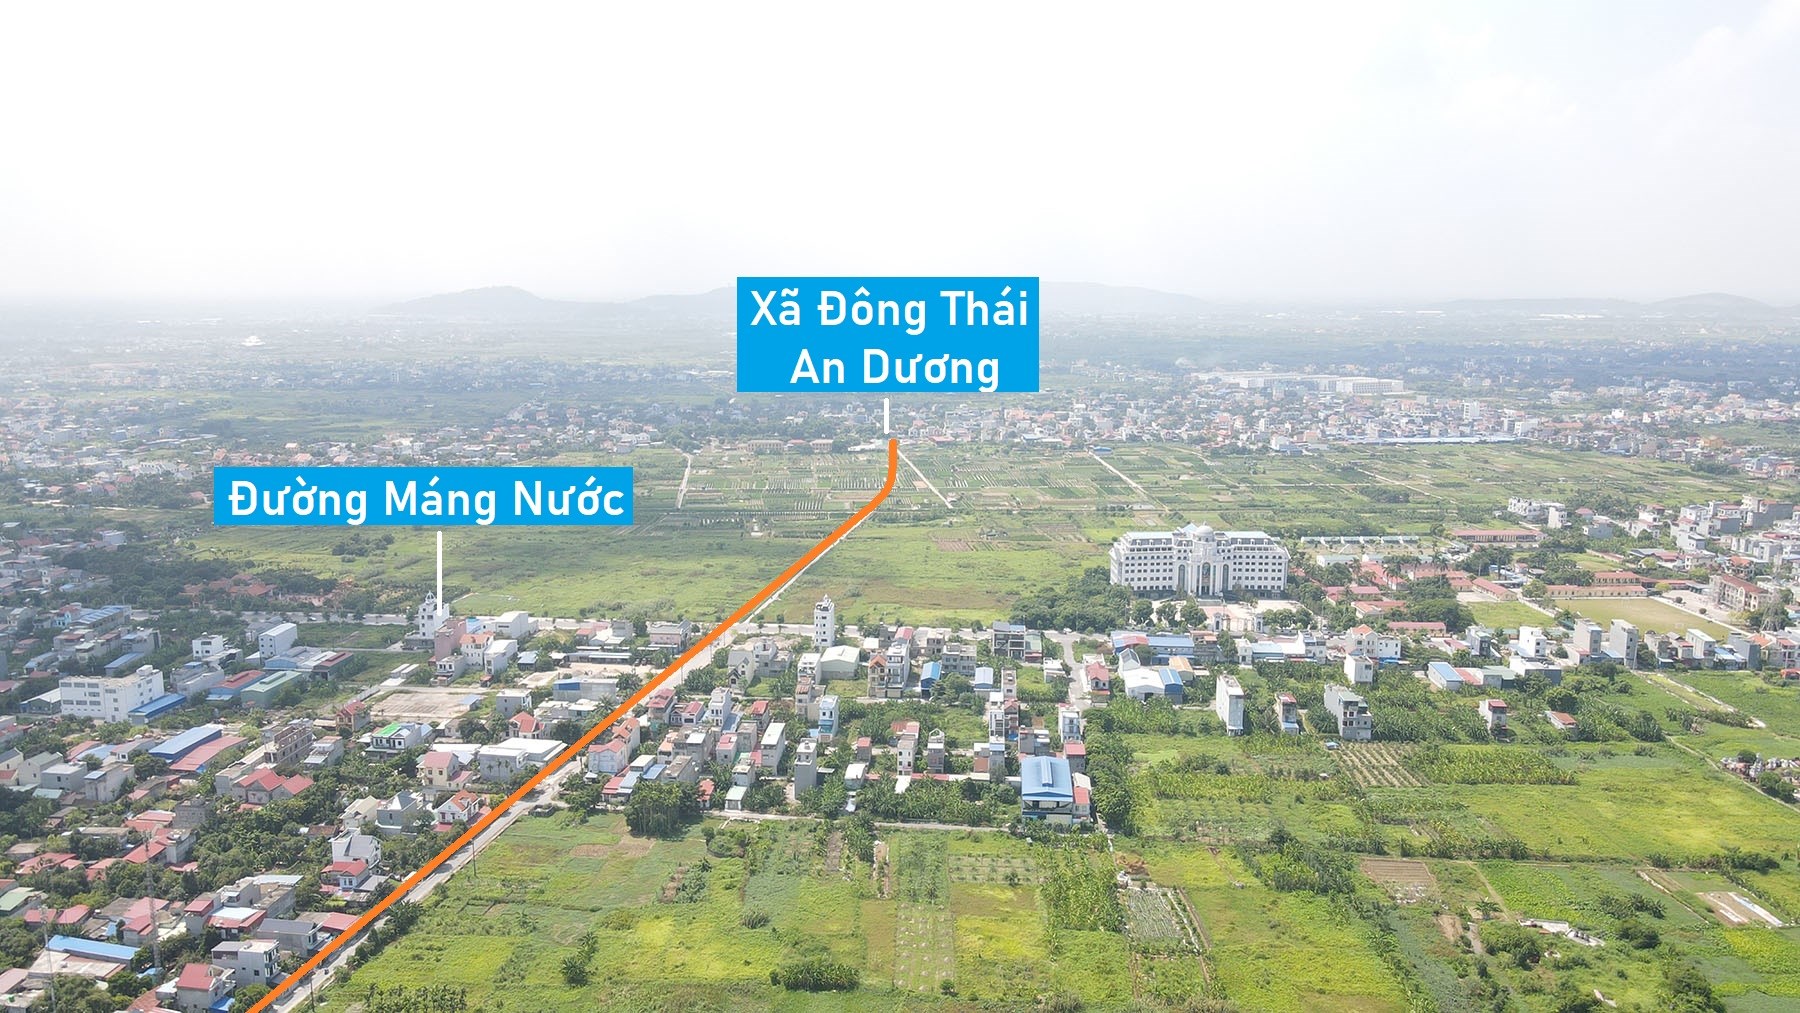 Toàn cảnh vị trí quy hoạch cầu vượt sông Rế nối An Dương - Hồng Bàng, TP Hải Phòng